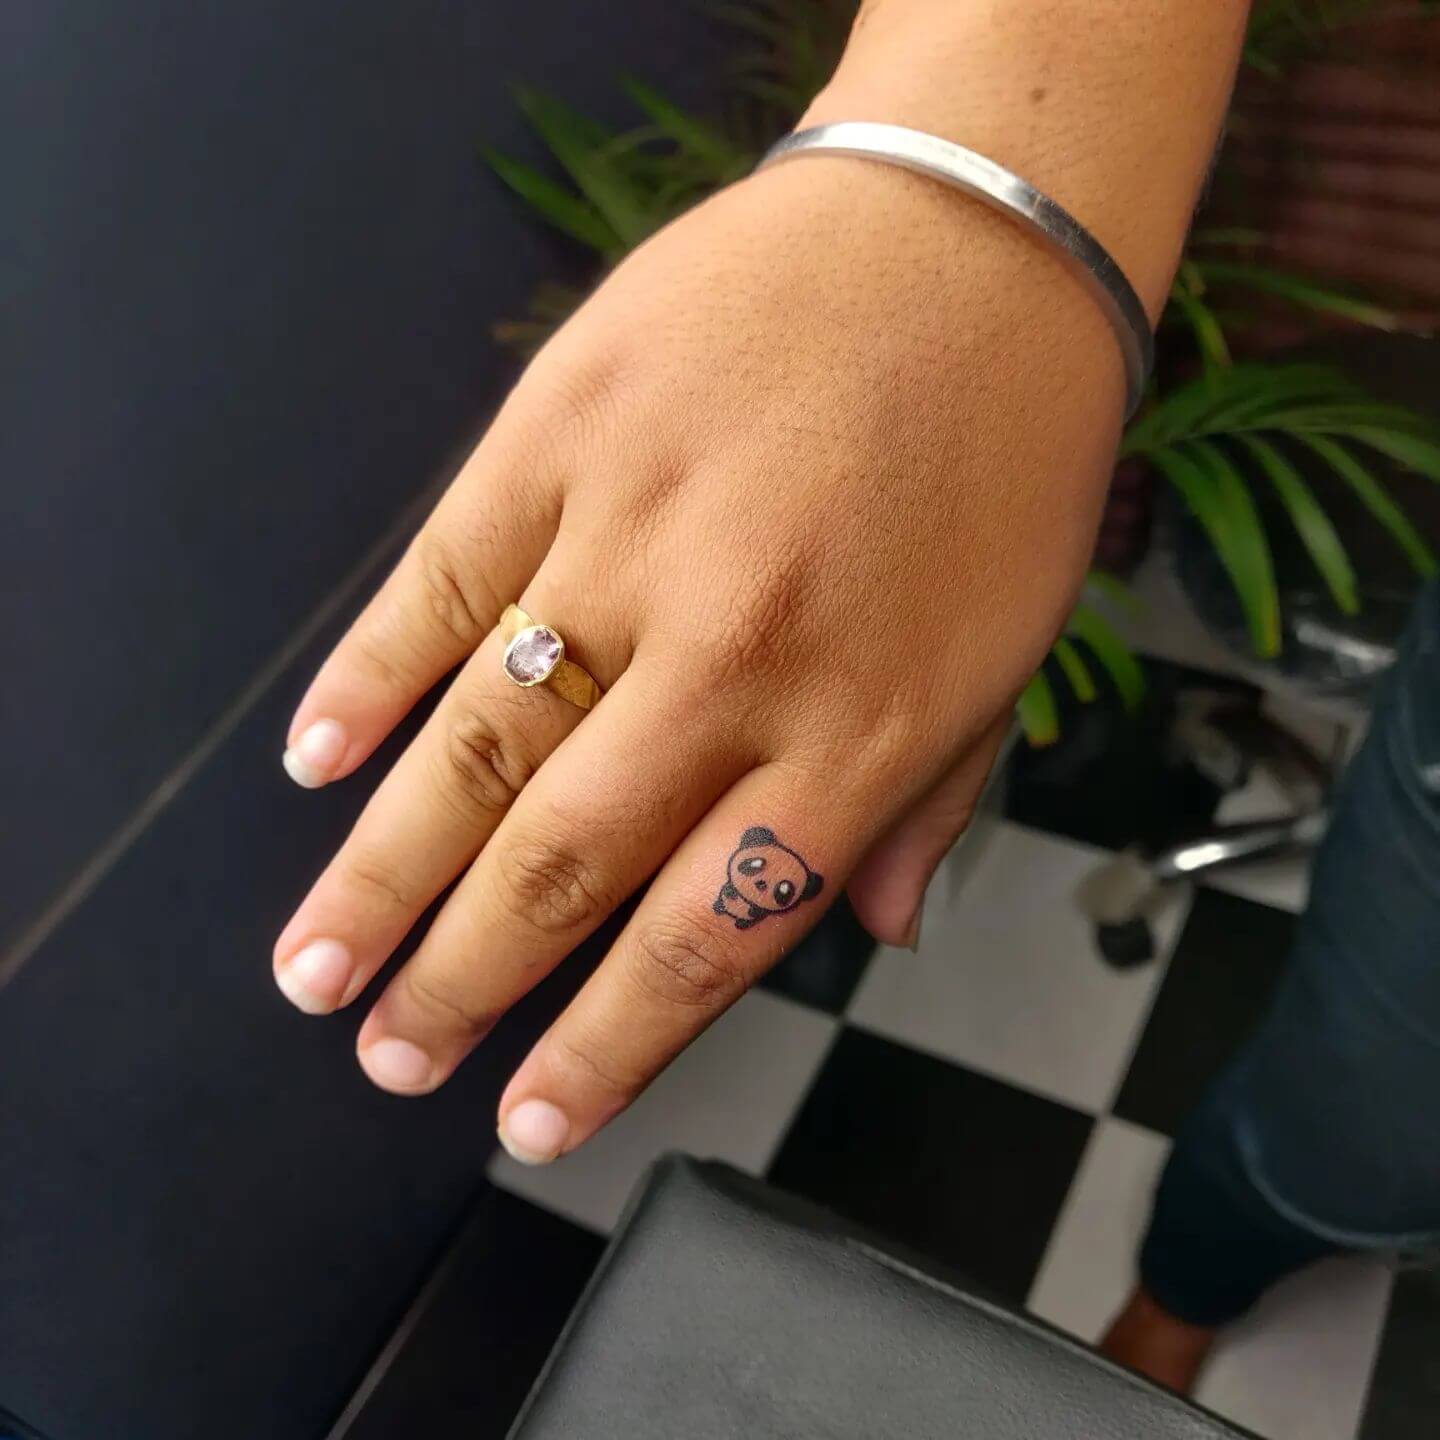 Bear Finger Tattoos